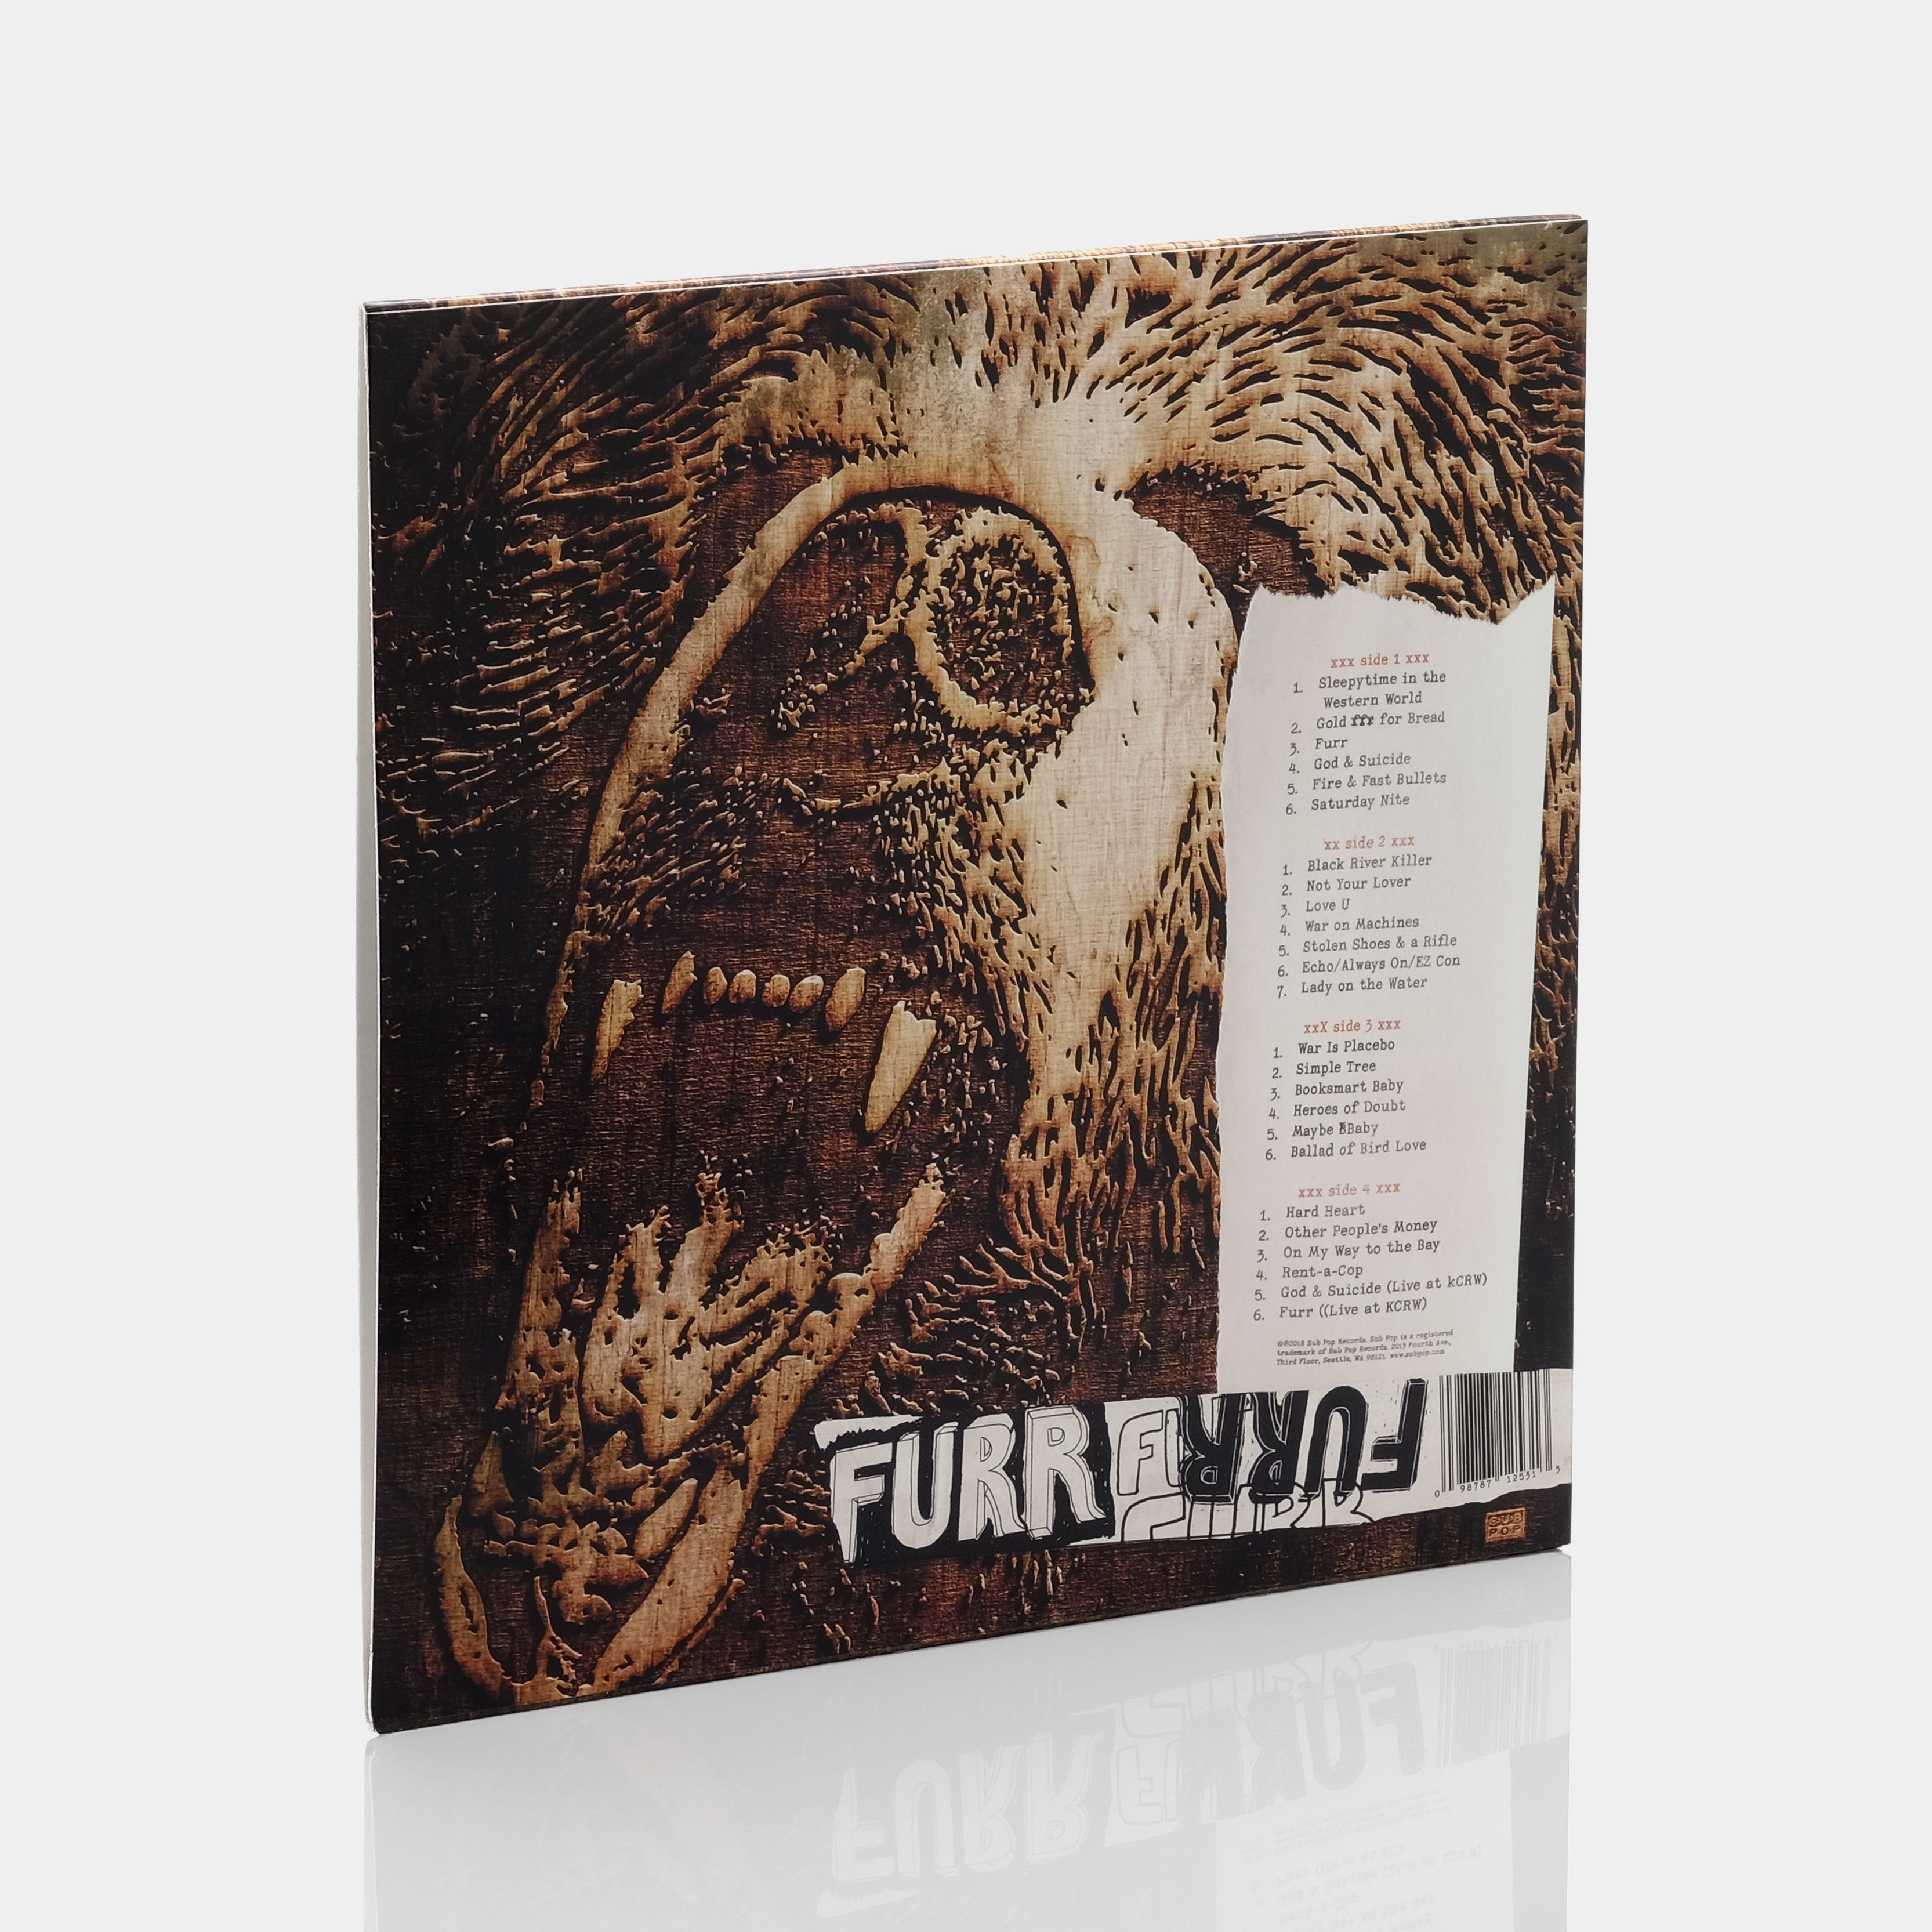 Blitzen Trapper - Furr (10th Anniversary Deluxe Edition) 2xLP Vinyl Record